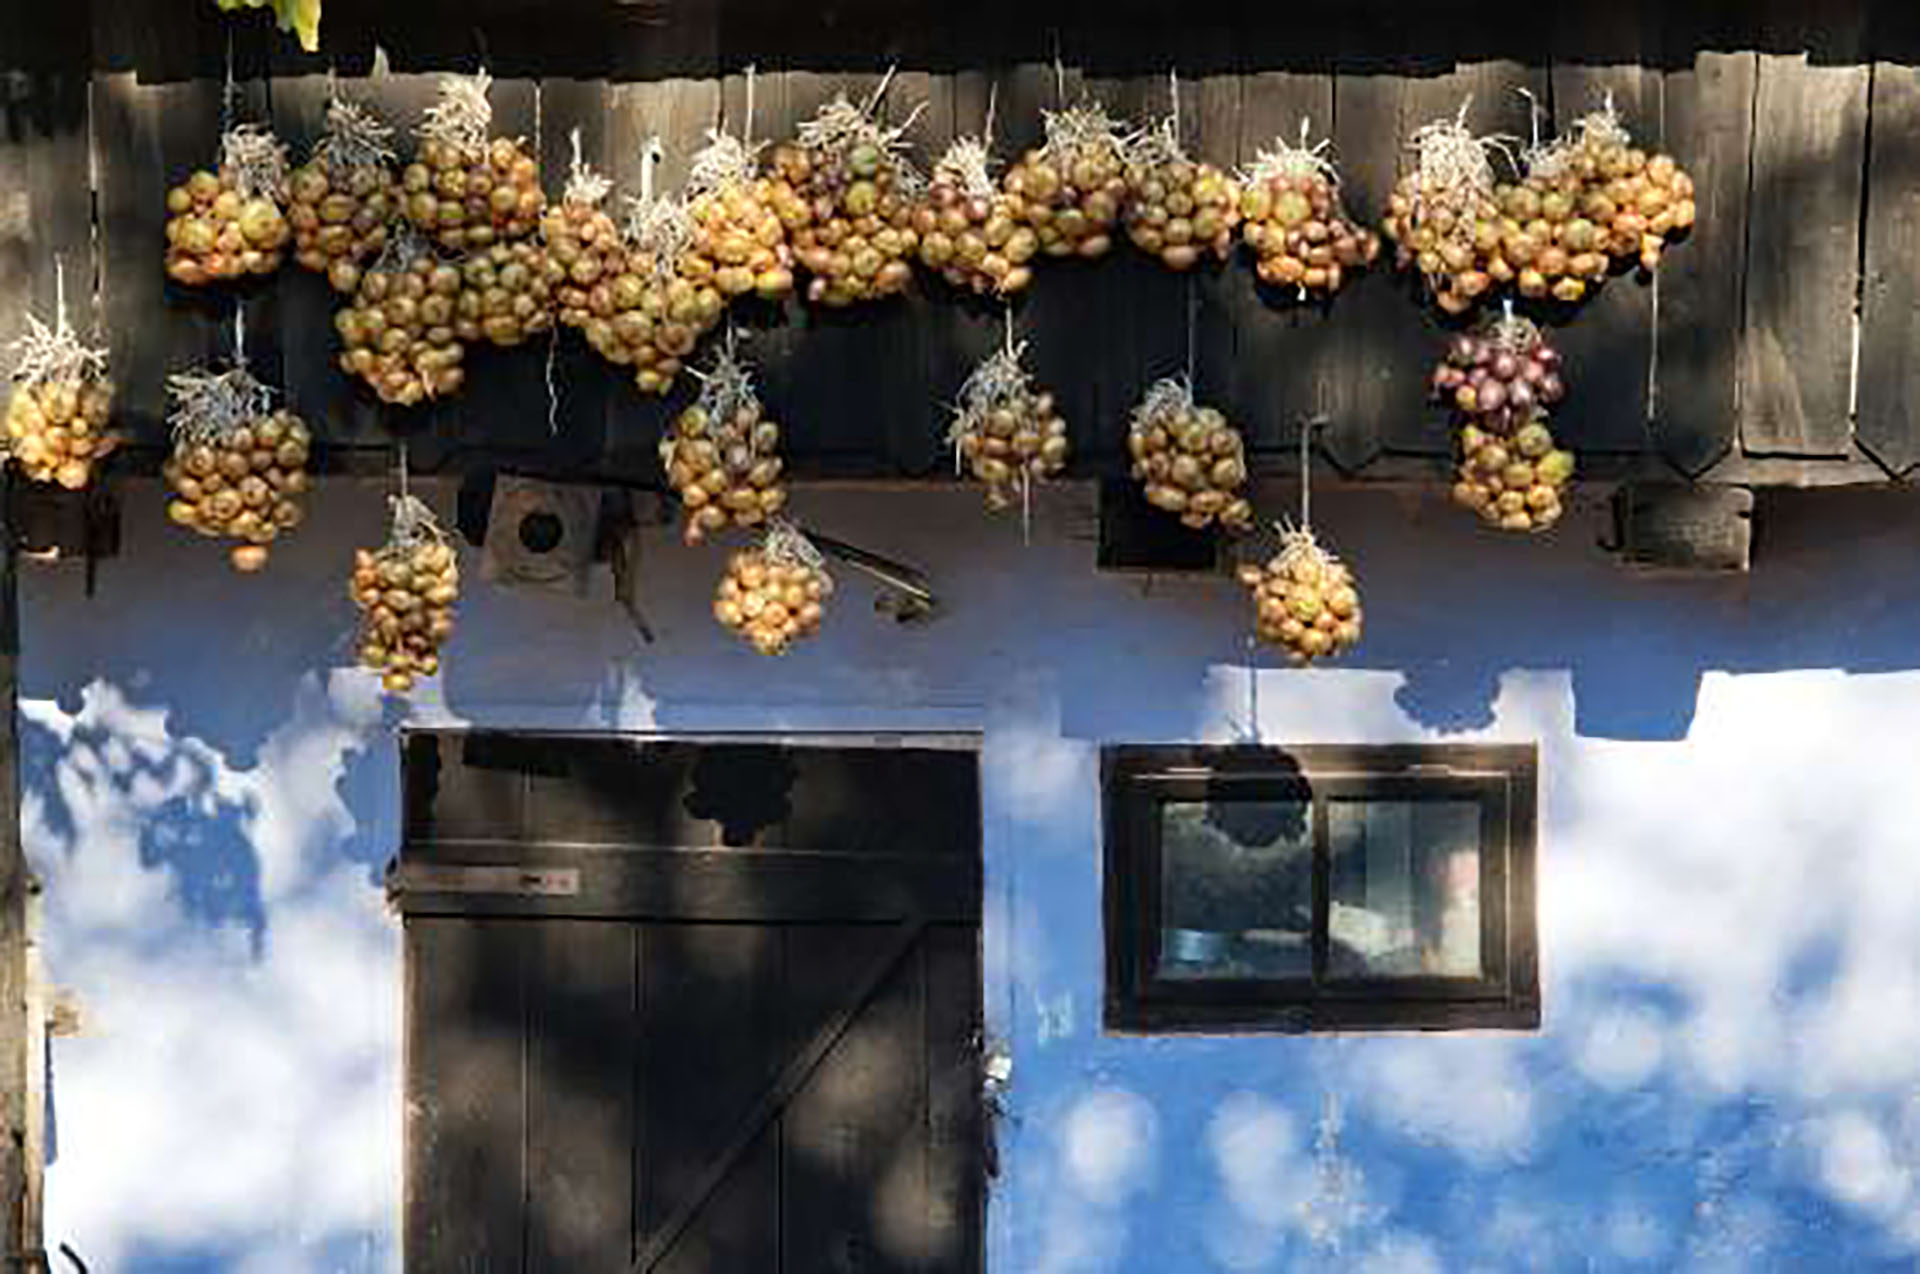 Esta tradición griega se llama Kremmida y las familias la realizan para celebrar el año nuevo ya que las cebollas simbolizan renacimiento